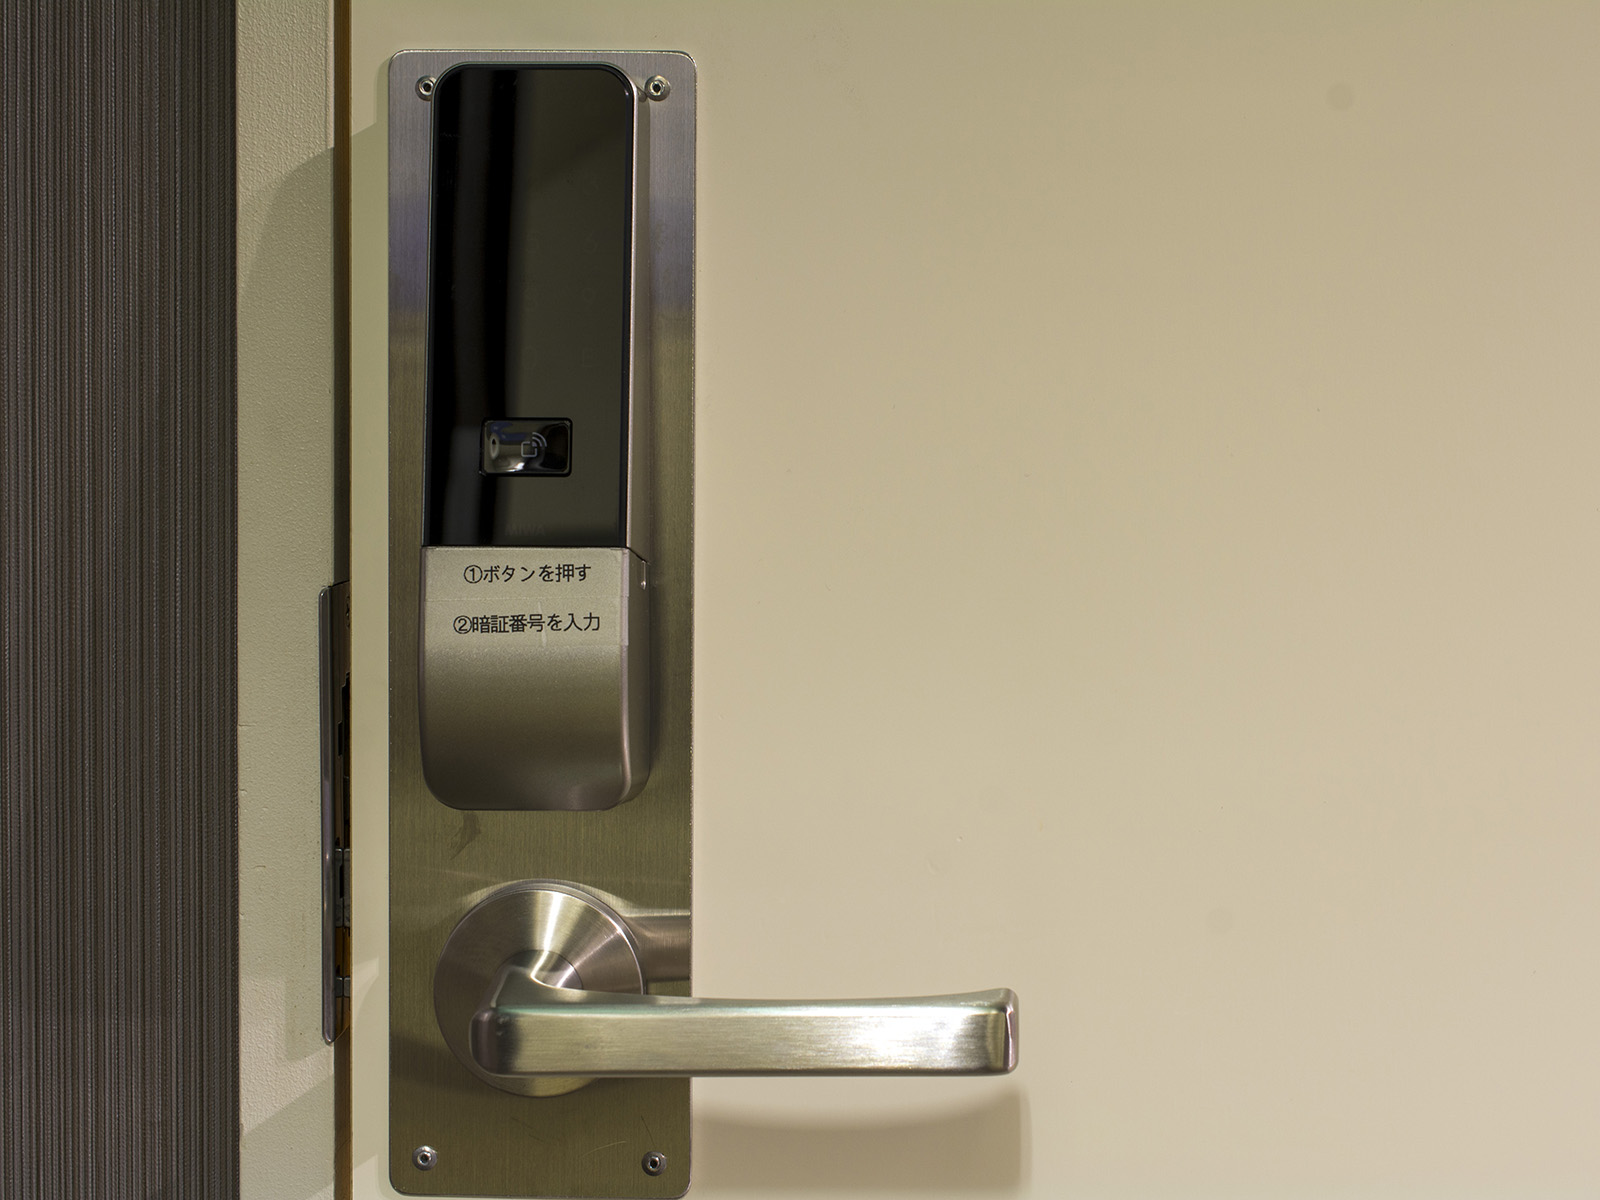 【6F 女性用大浴場】女性浴場入口には暗証番号式の電子ロックキーを設置